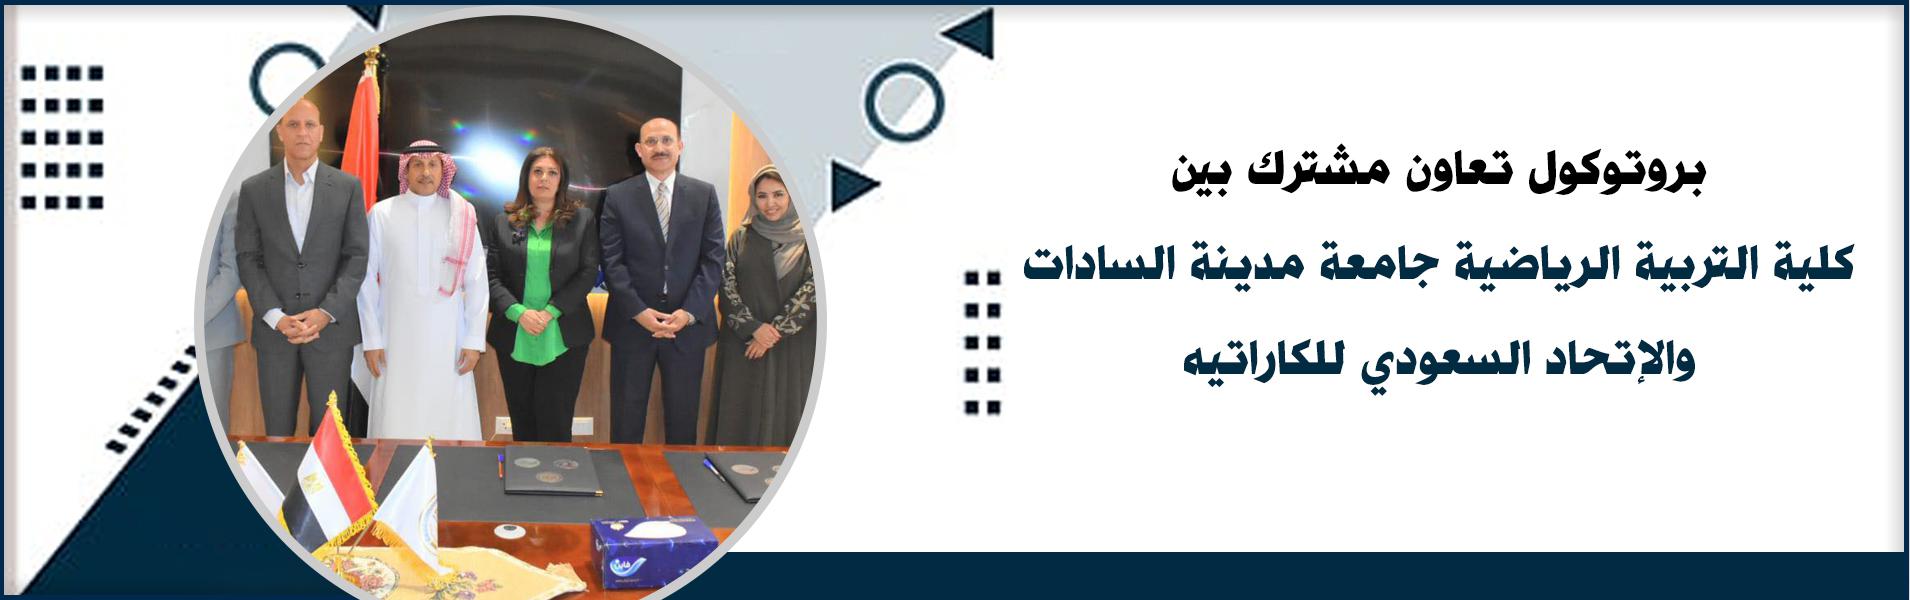 بروتوكول تعاون مشترك بين كلية التربية الرياضية جامعة مدينة السادات والإتحاد السعودي للكاراتيه